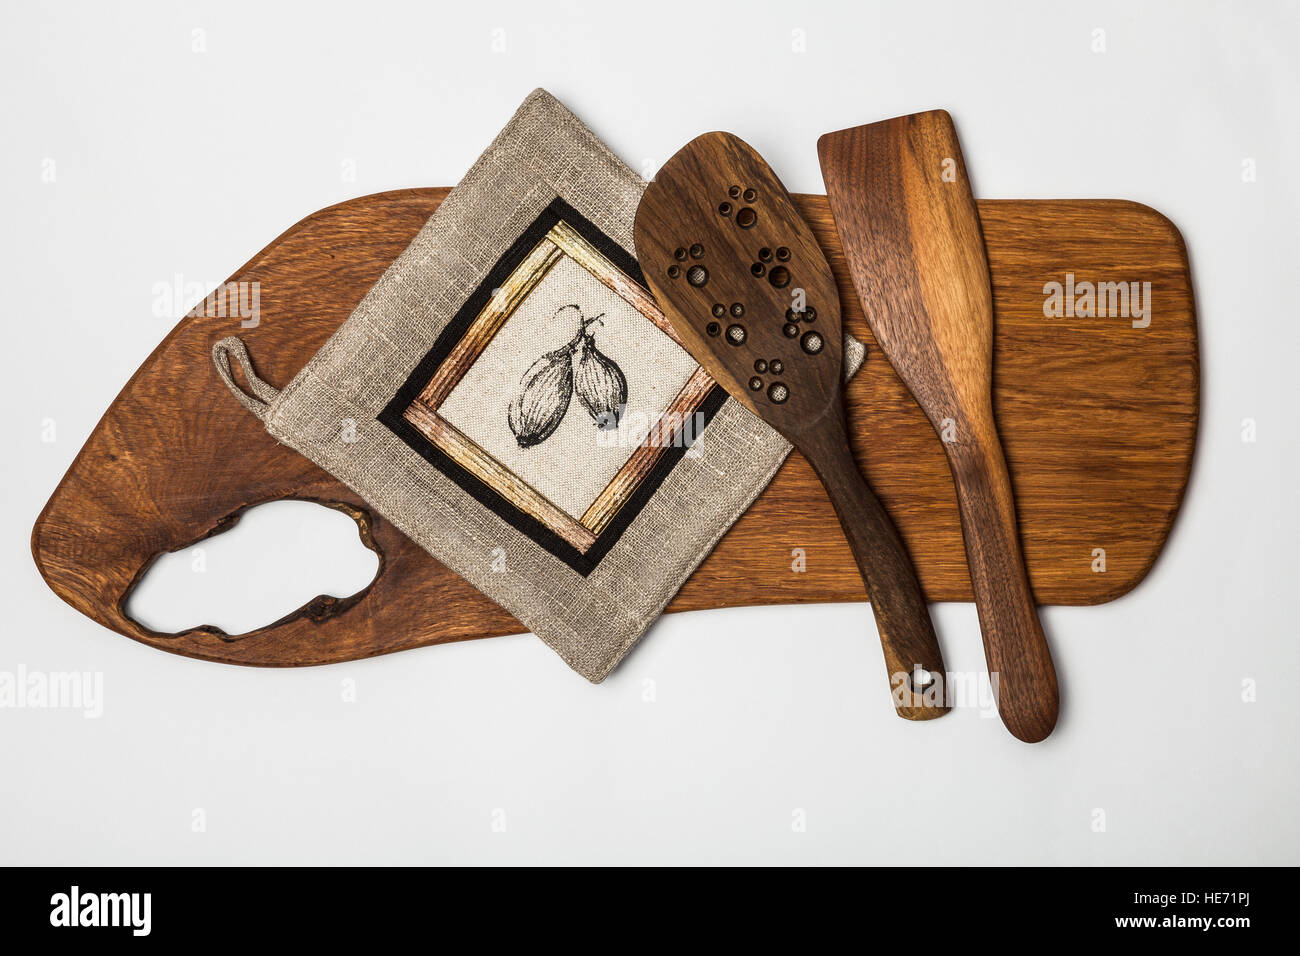 Matériel de cuisine - table de coupe en bois,et outils , manique en patchwork. Banque D'Images